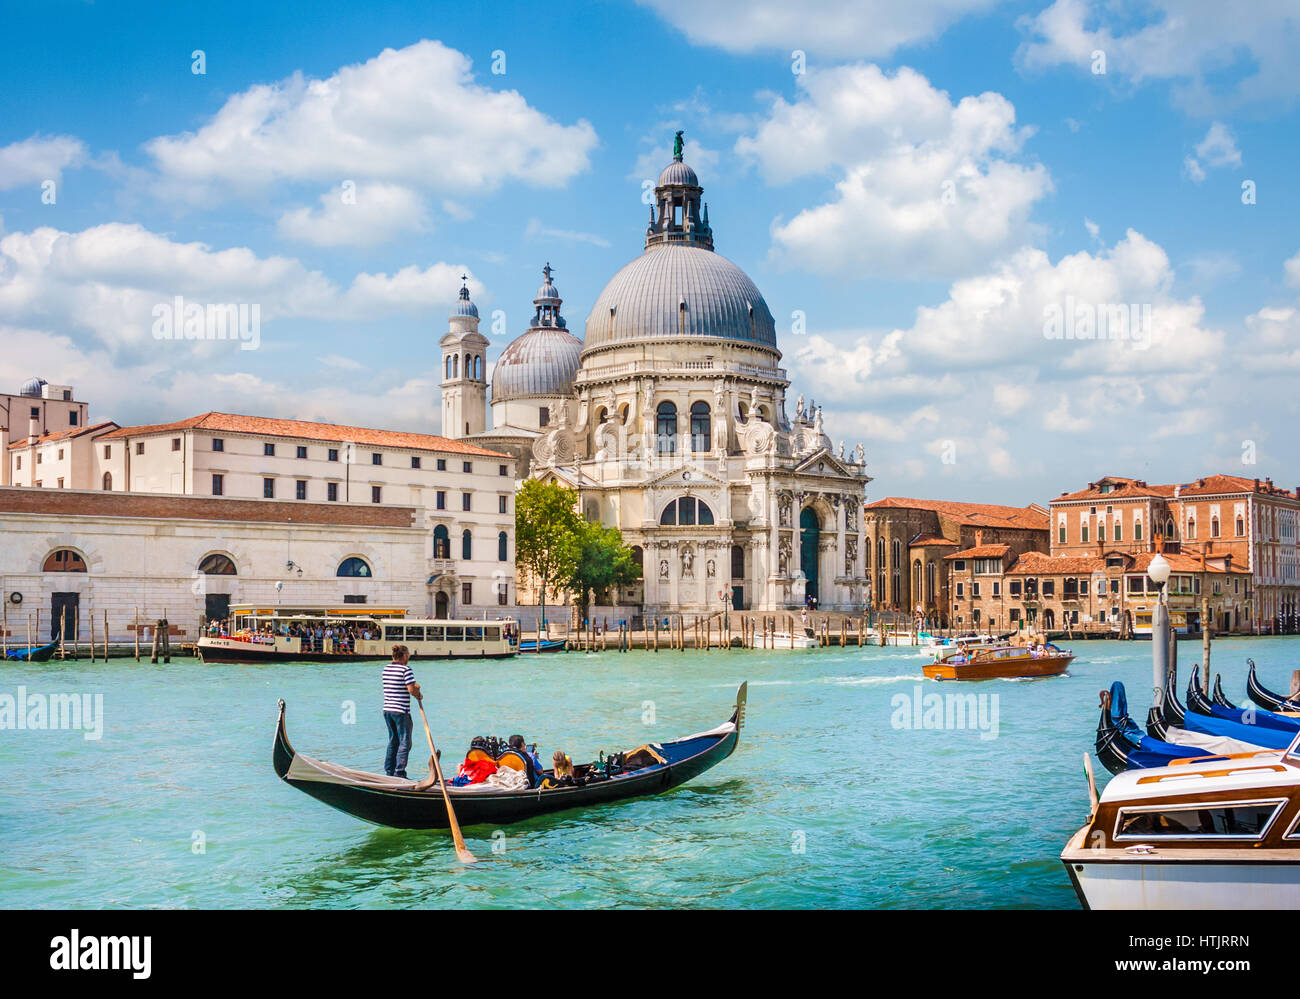 Tradizionale Gondola sul Canal Grande con la Basilica di Santa Maria della Salute in background, Venezia, Italia Foto Stock